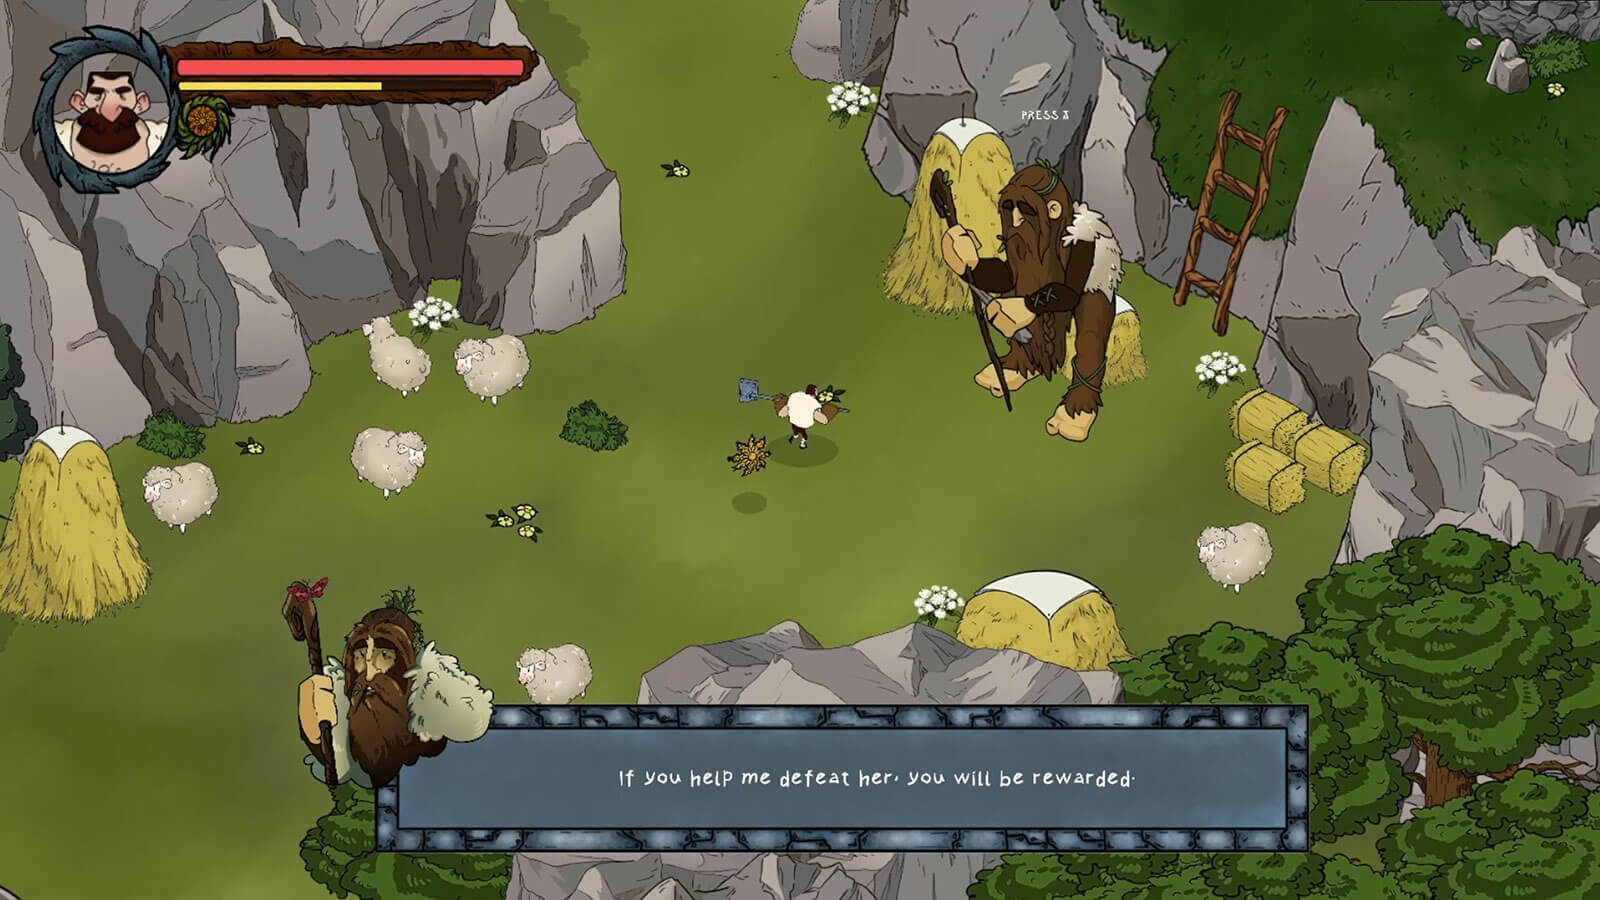 El jugador entabla una conversación con un NPC gigante en una zona rocosa